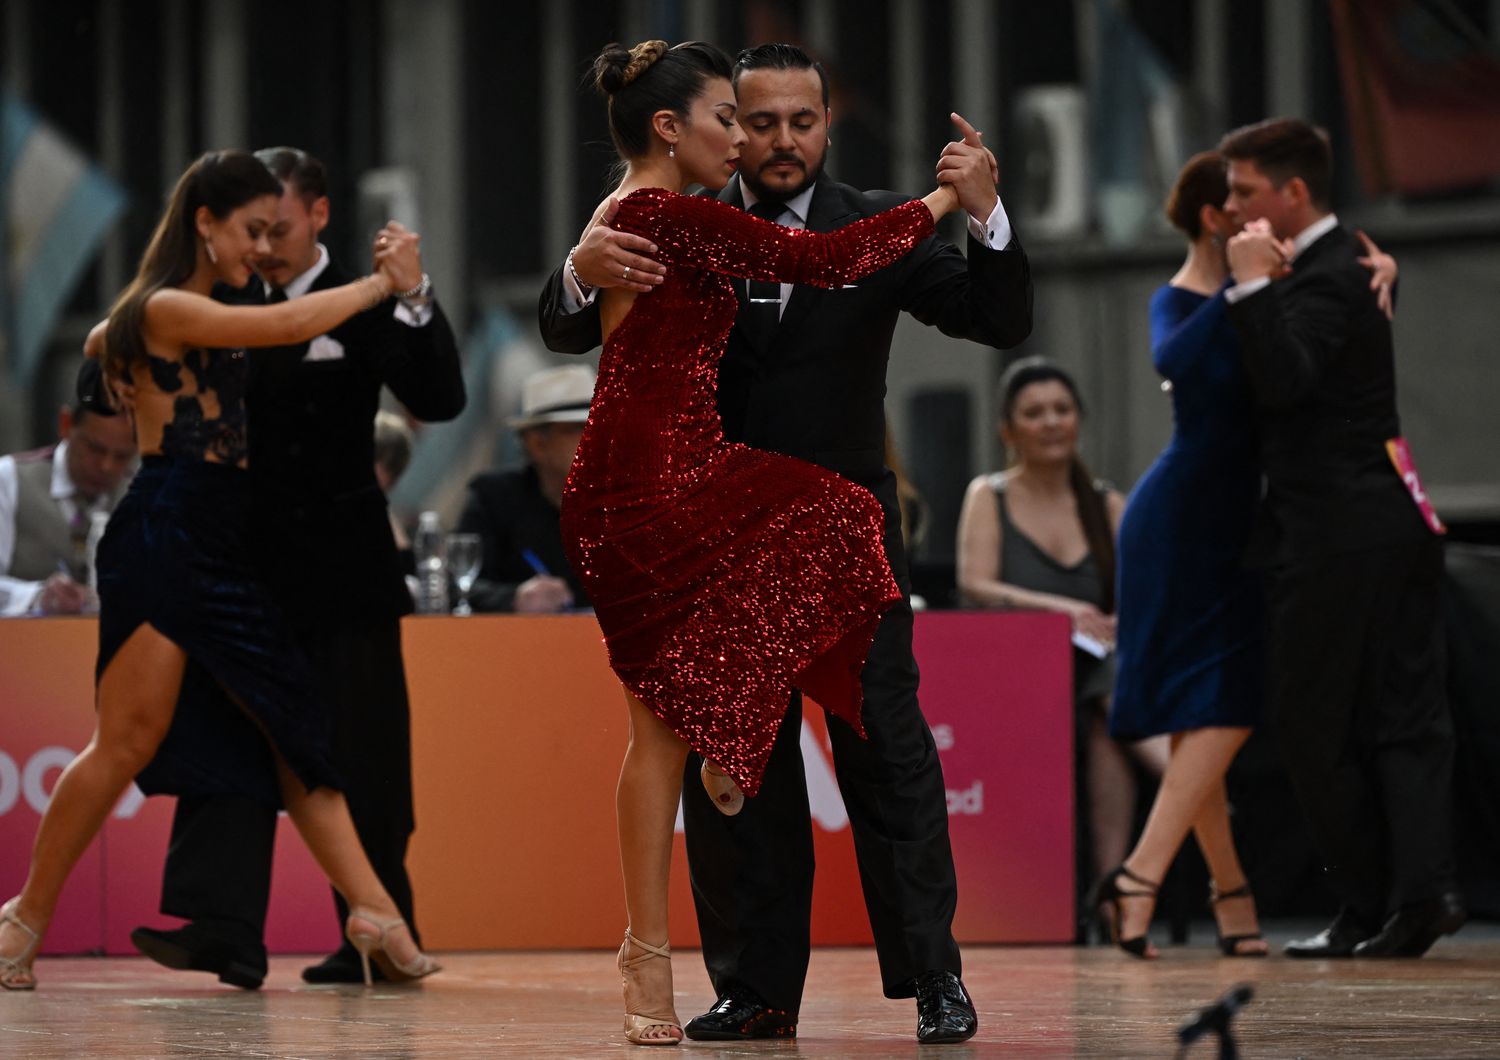 Un campionato di tango a Buenos Aires